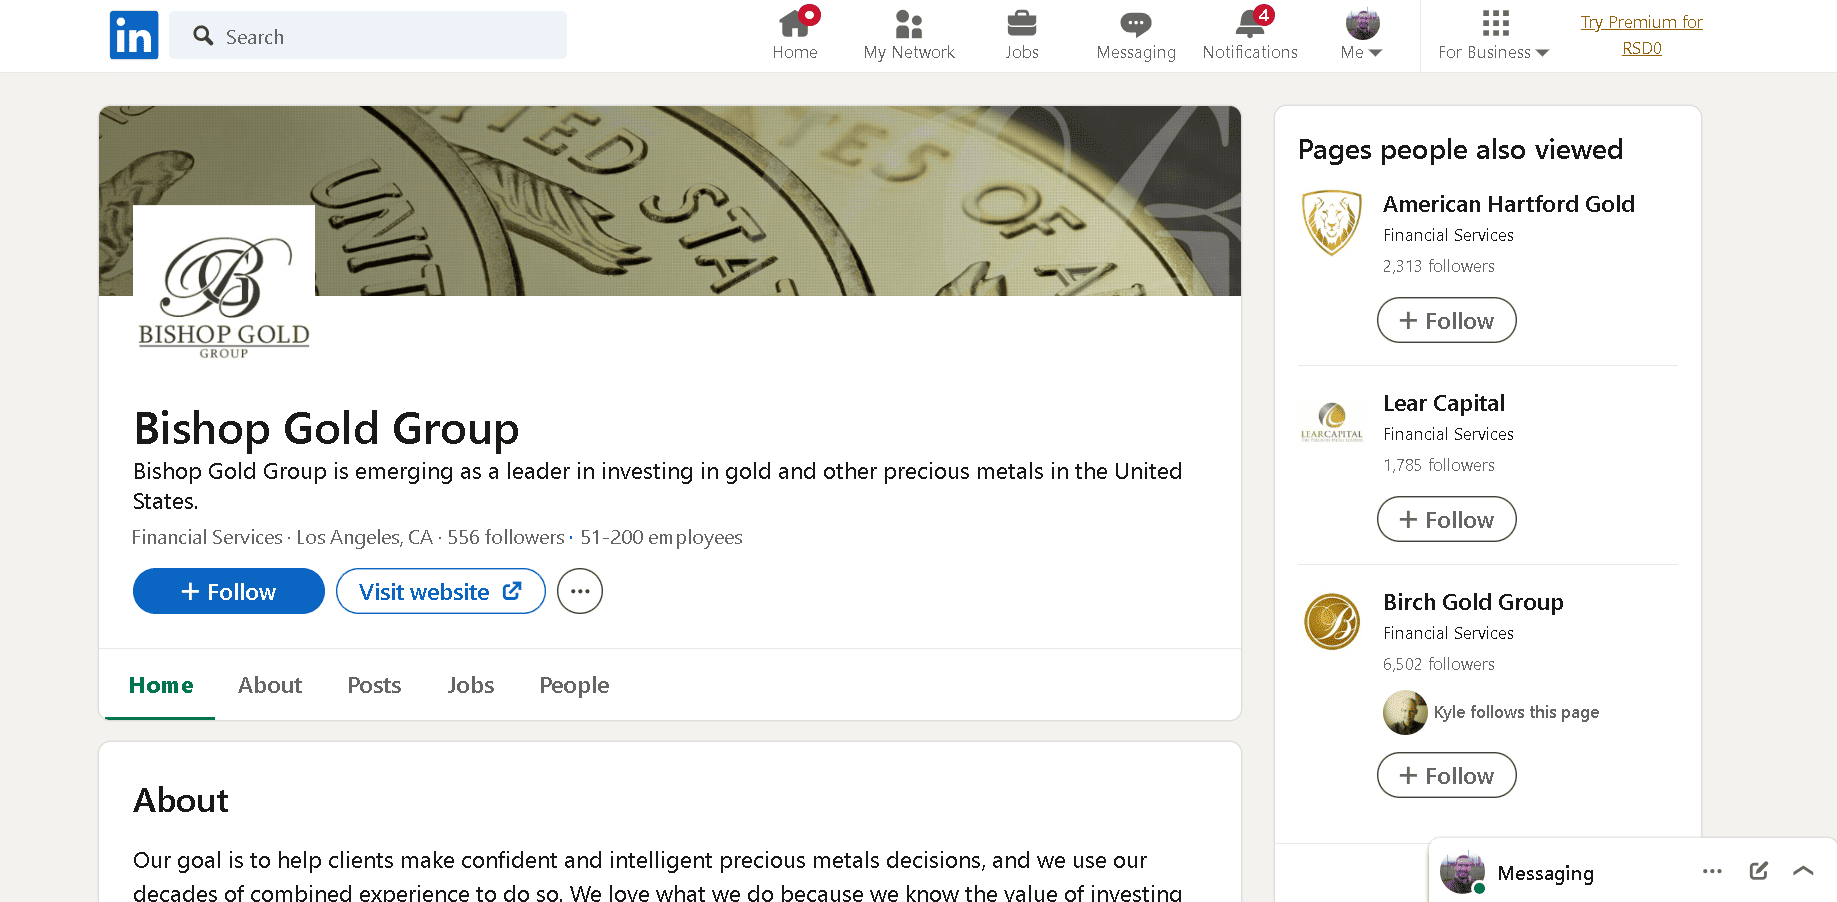 Bishop Gold Group LinkedIn profile